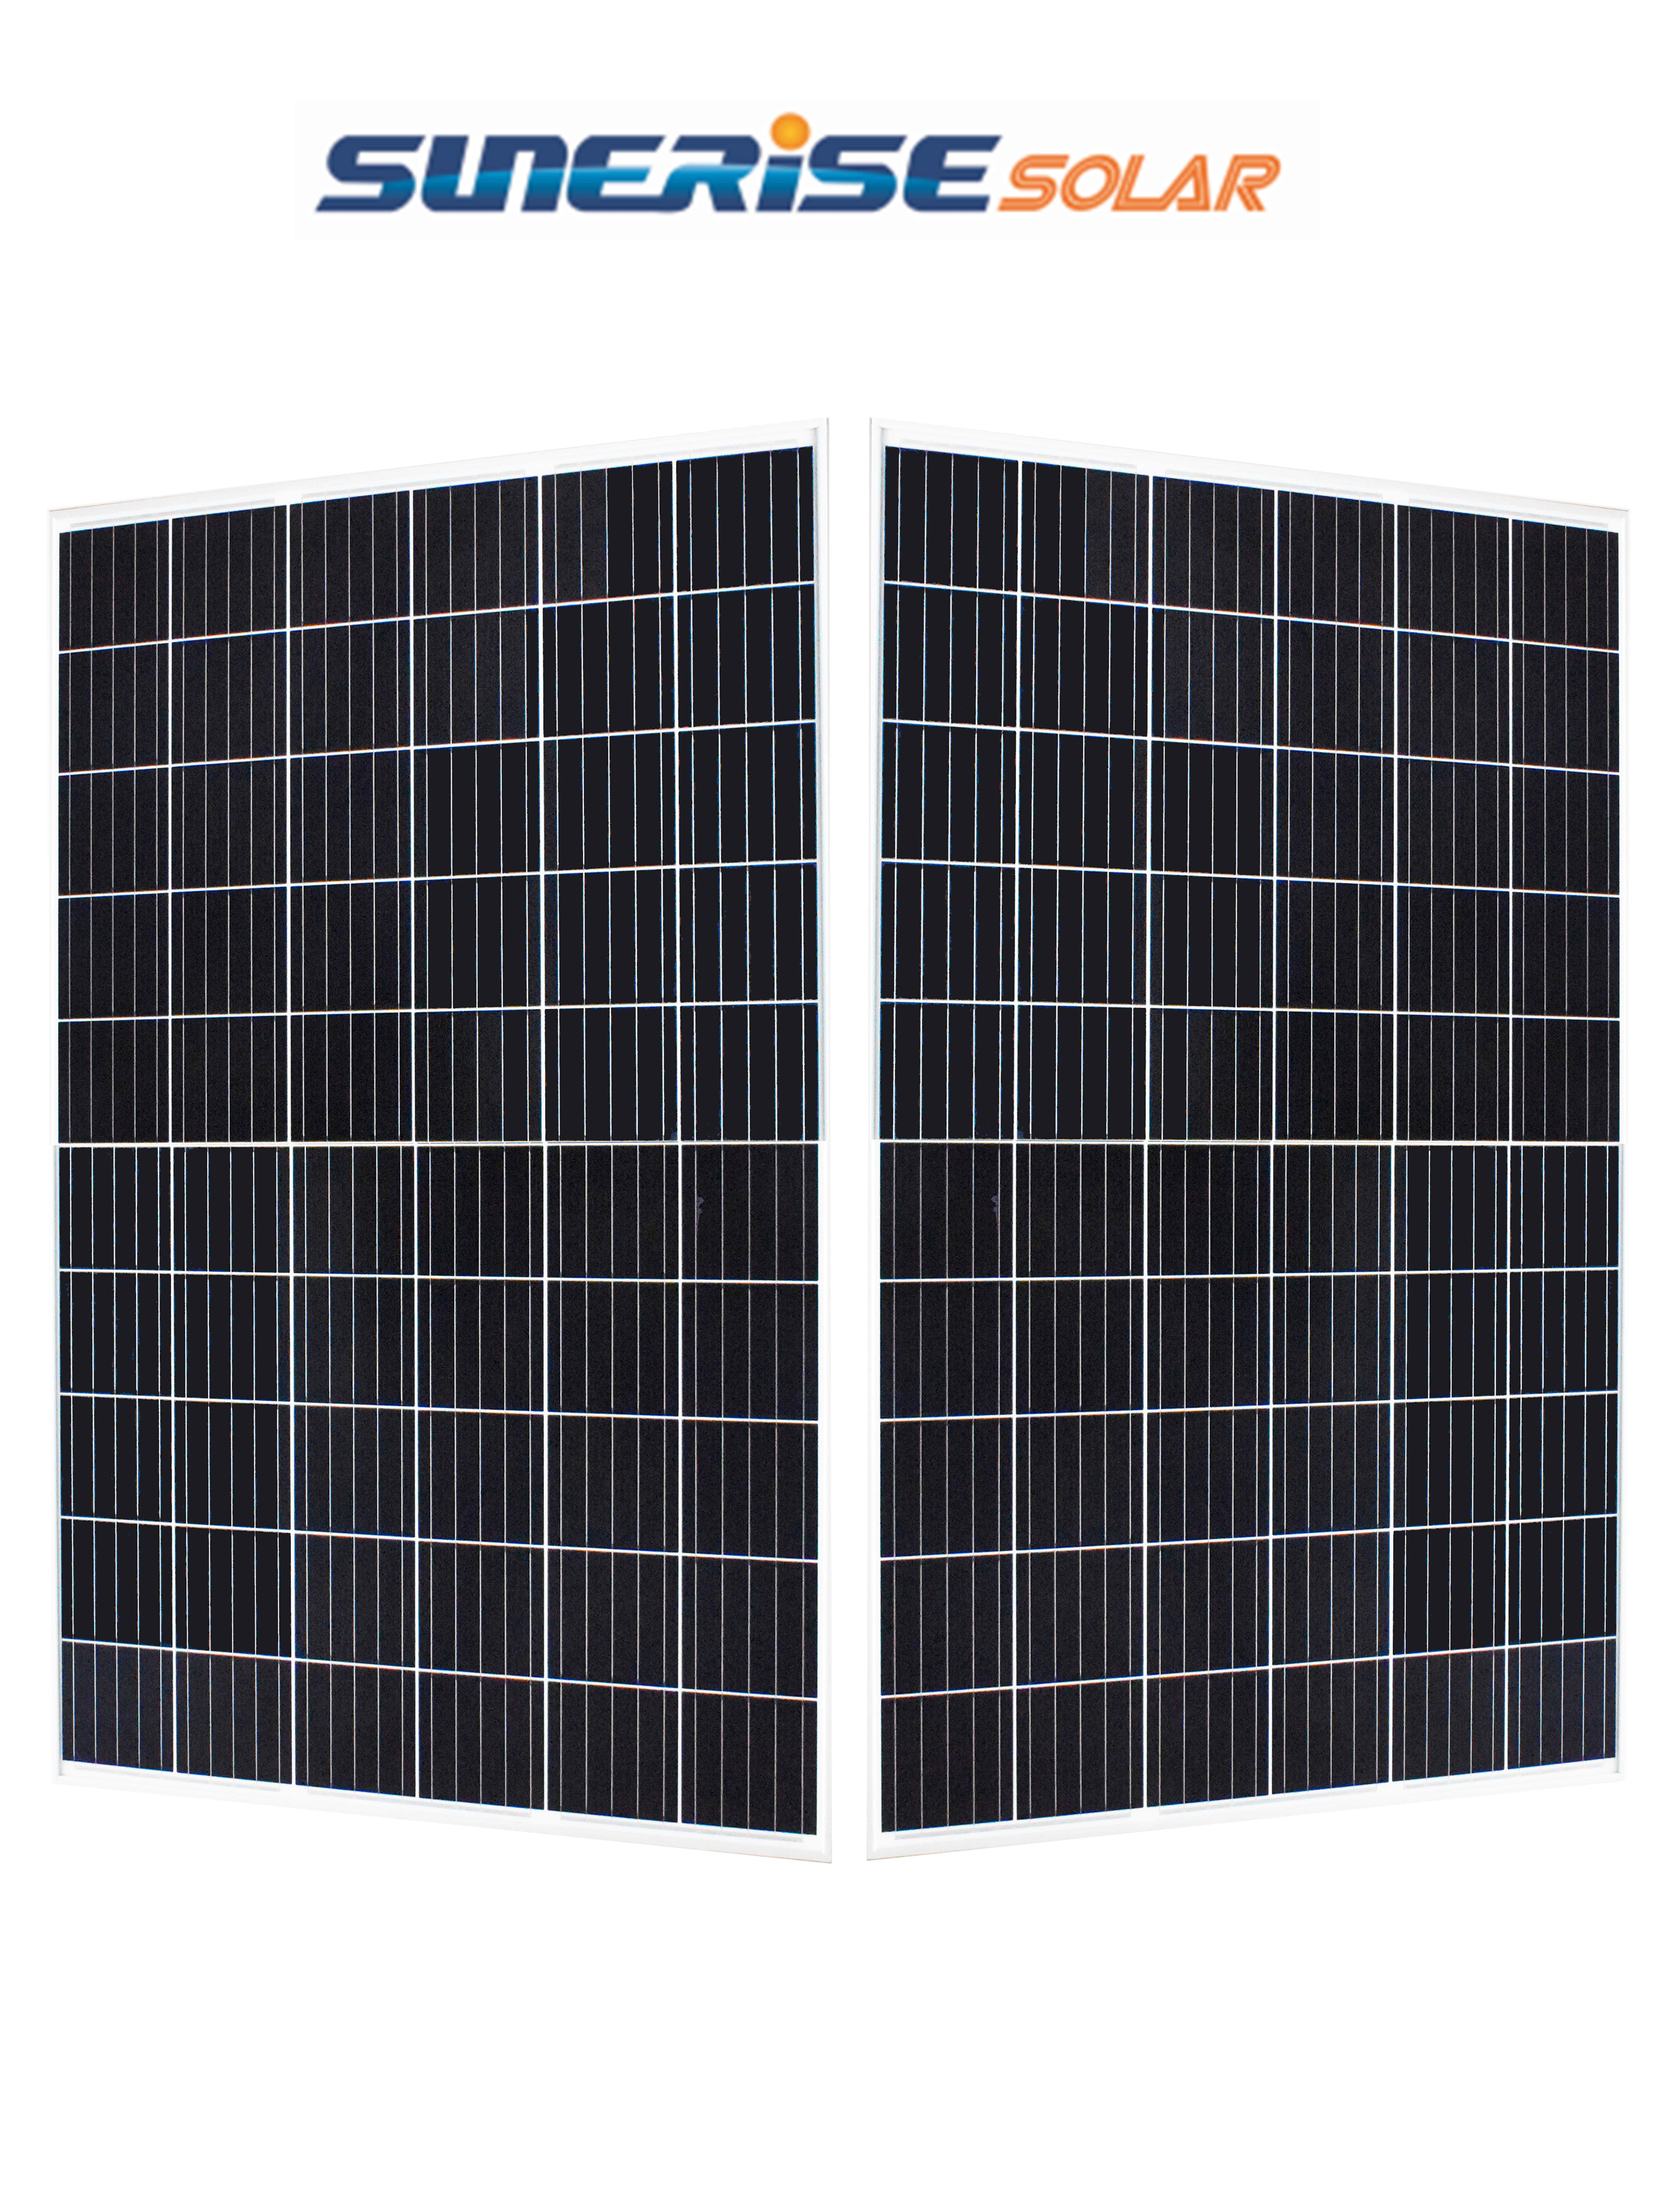 JC 41.10V 325W 35mm Monocrystalline Solar Panel